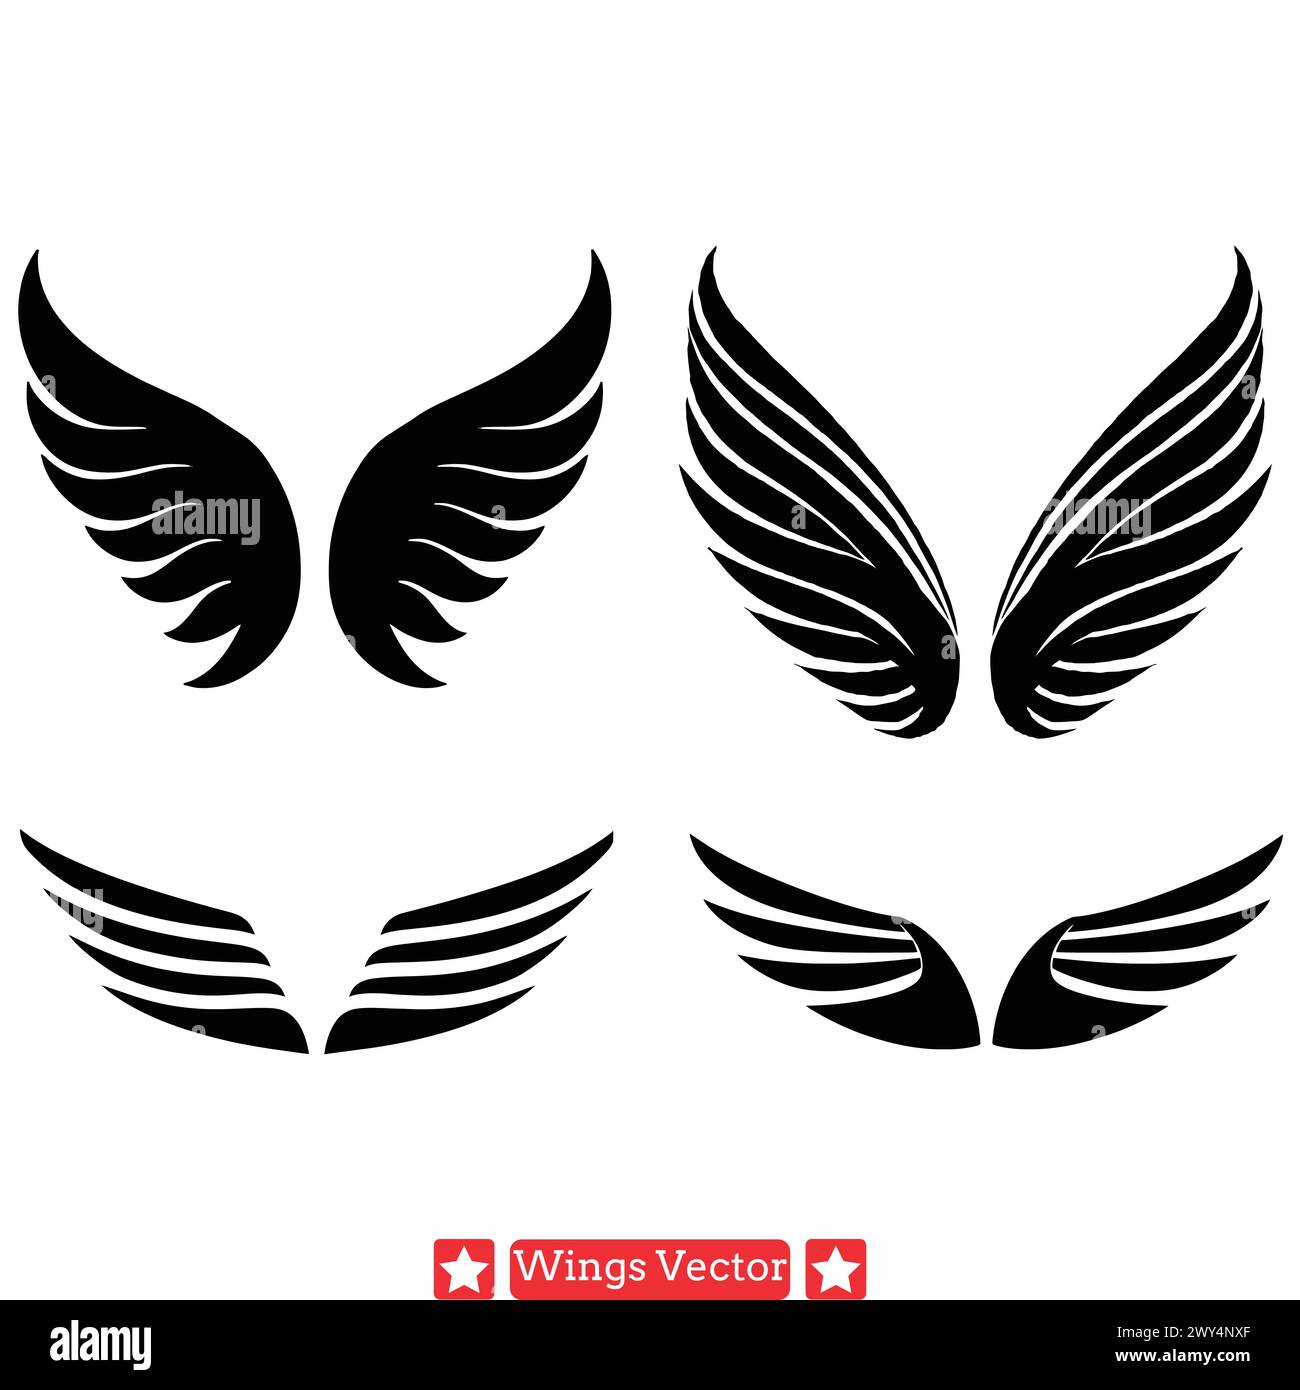 Heavenly Visions ha dettagliato Wings Vector Collection per artisti Illustrazione Vettoriale